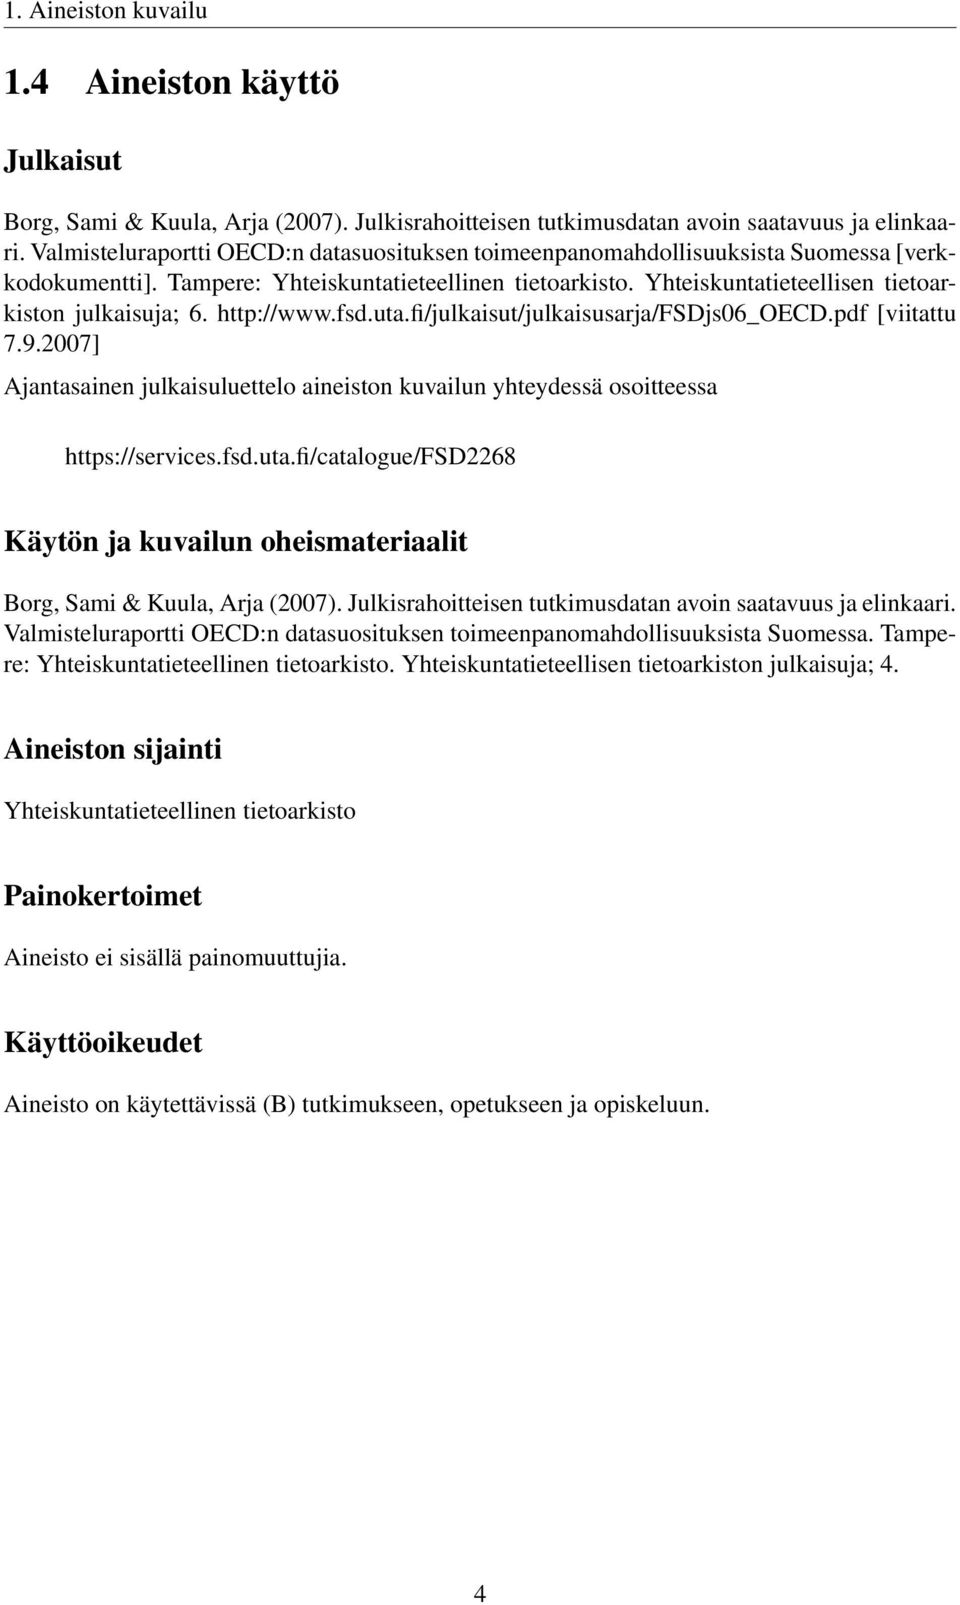 http://www.fsd.uta.fi/julkaisut/julkaisusarja/fsdjs06_oecd.pdf [viitattu 7.9.2007] Ajantasainen julkaisuluettelo aineiston kuvailun yhteydessä osoitteessa https://services.fsd.uta.fi/catalogue/fsd2268 Käytön ja kuvailun oheismateriaalit Borg, Sami & Kuula, Arja (2007).